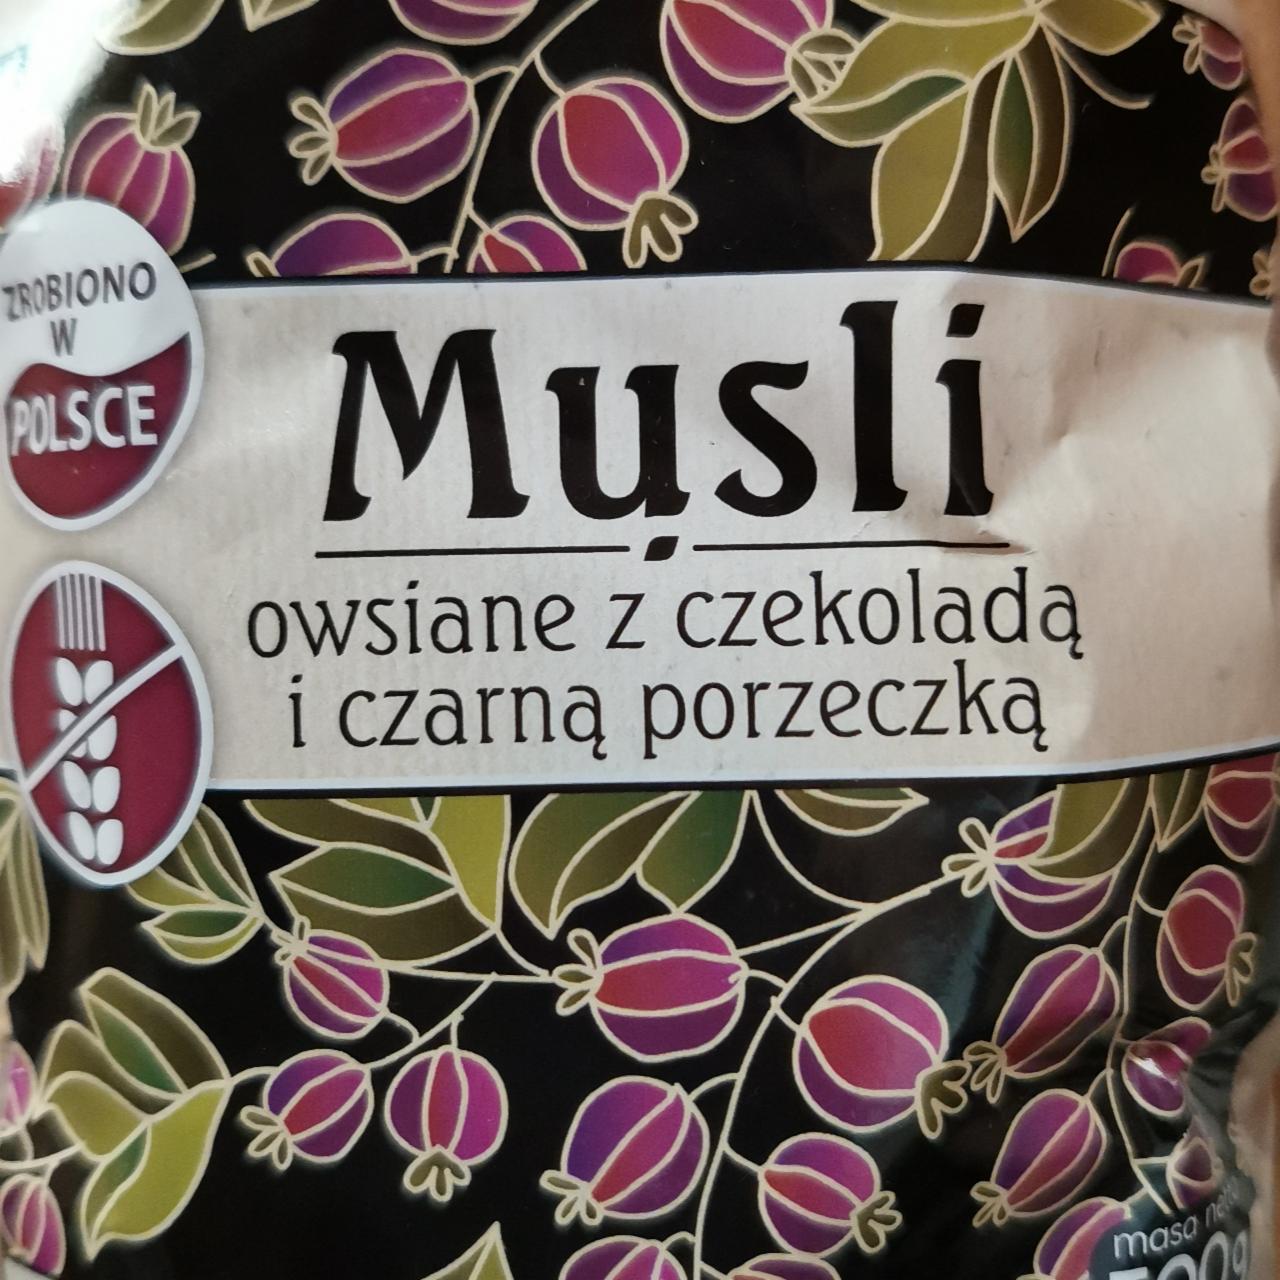 Képek - Musli owsiane z czekolada i czarna porzeczka Pięć Przemian